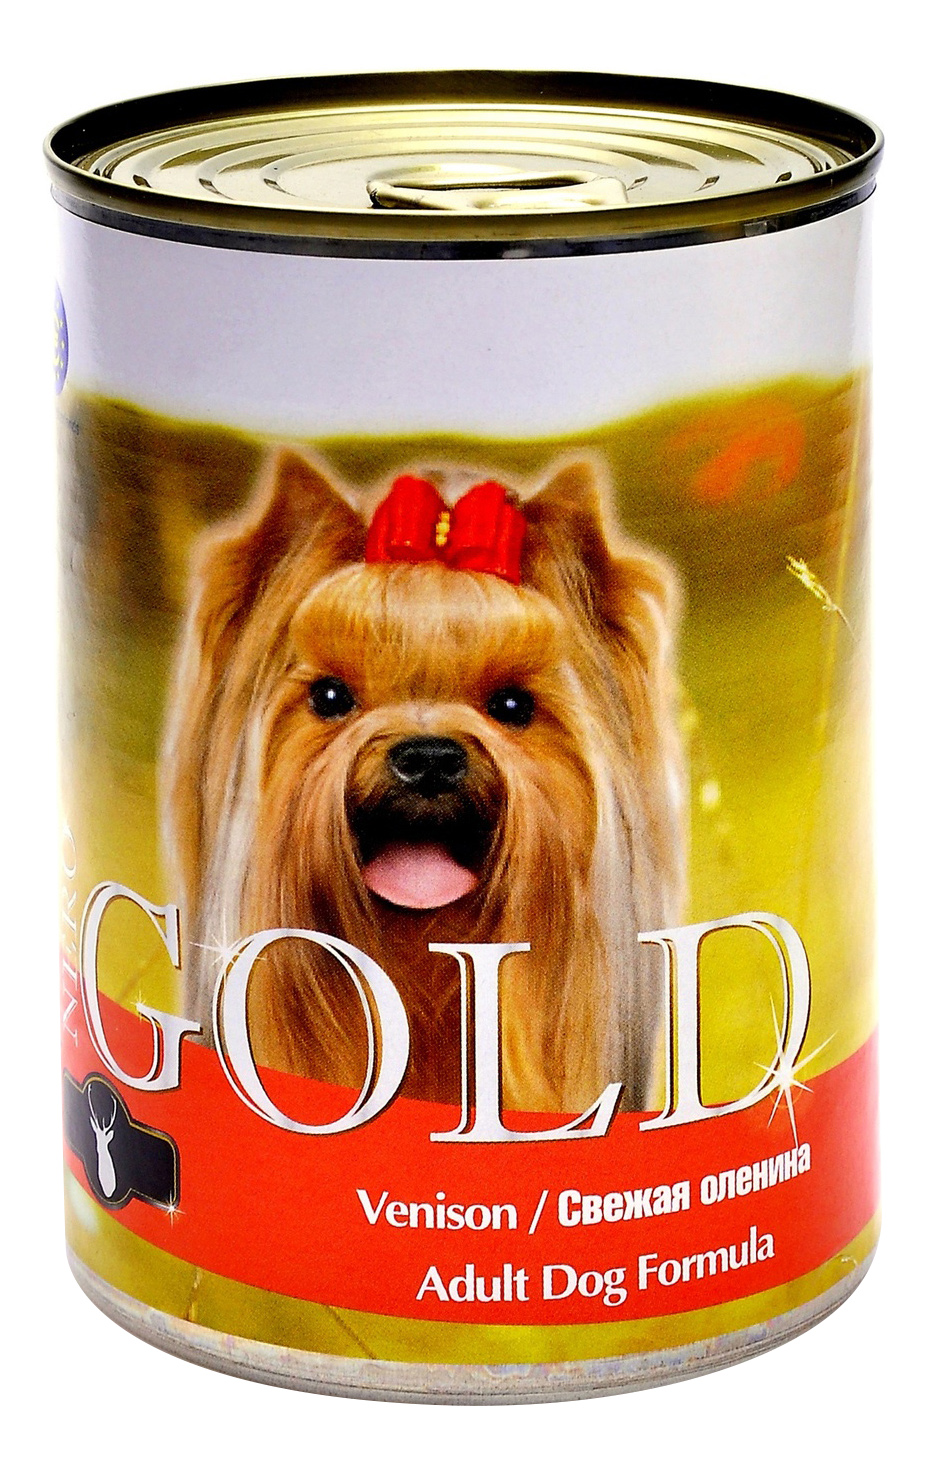 фото Консервы для собак nero gold adult dog formula, свежая оленина, 12шт, 1250г